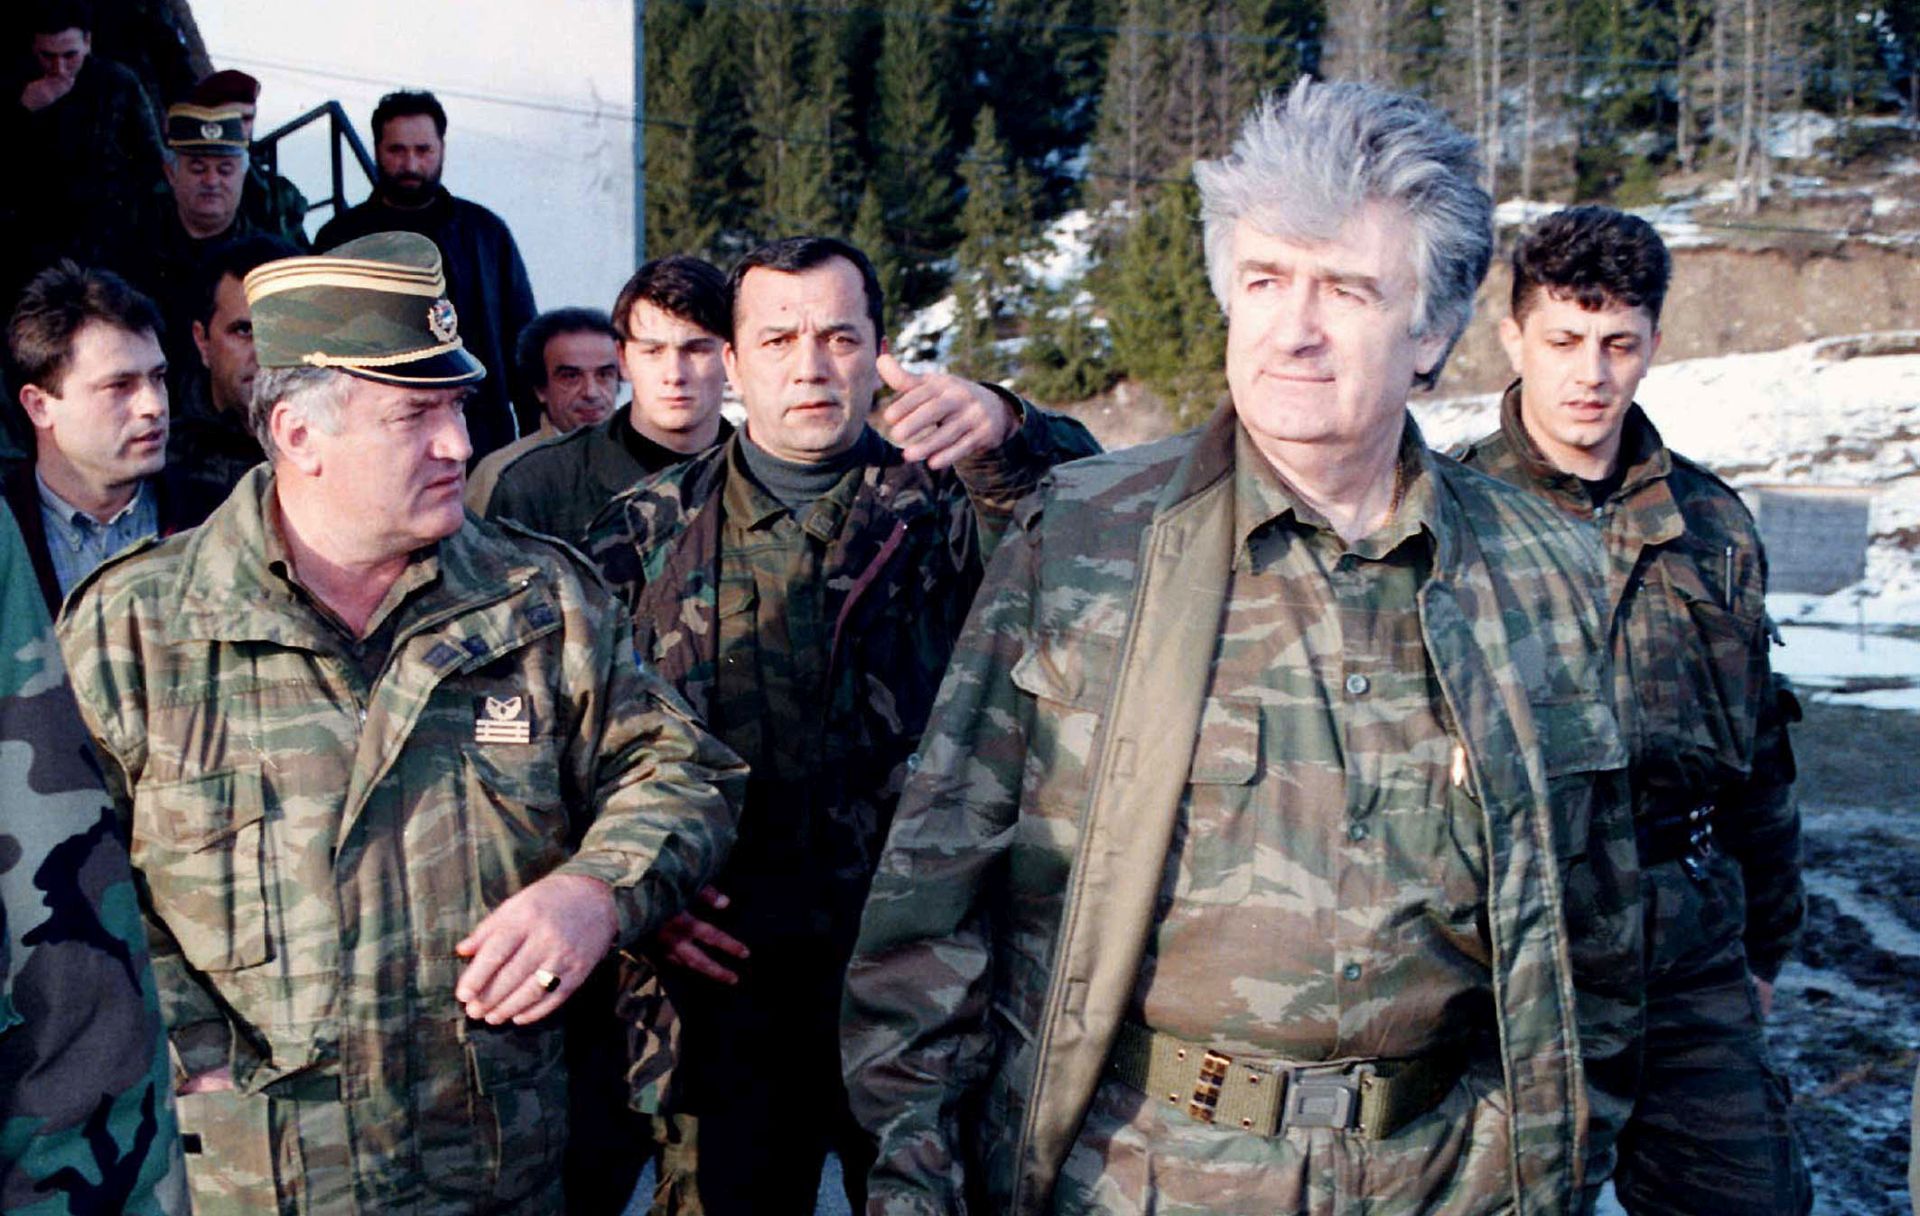 Beograd, 26.05.2011 - Arhivska foografija iz travnja 1995. godine prikazuje nekadanjeg voðu bosanskih Srba Radovana Karadiæa i Ratka Mladiæa na planini Vlaiæ. Srbijanska policija uhitila je tijekom prijepodneva mukarca po imenu Milorad Komadiæ, za kojega se sumnja da je odbjegli haaki optuenik Ratko Mladiæ, a u tijeku je provjera identiteta, javila je u èetvrtak televizija B92. 
foto FaH/ TANJUG/SAVA RADOVANOVIC /ds